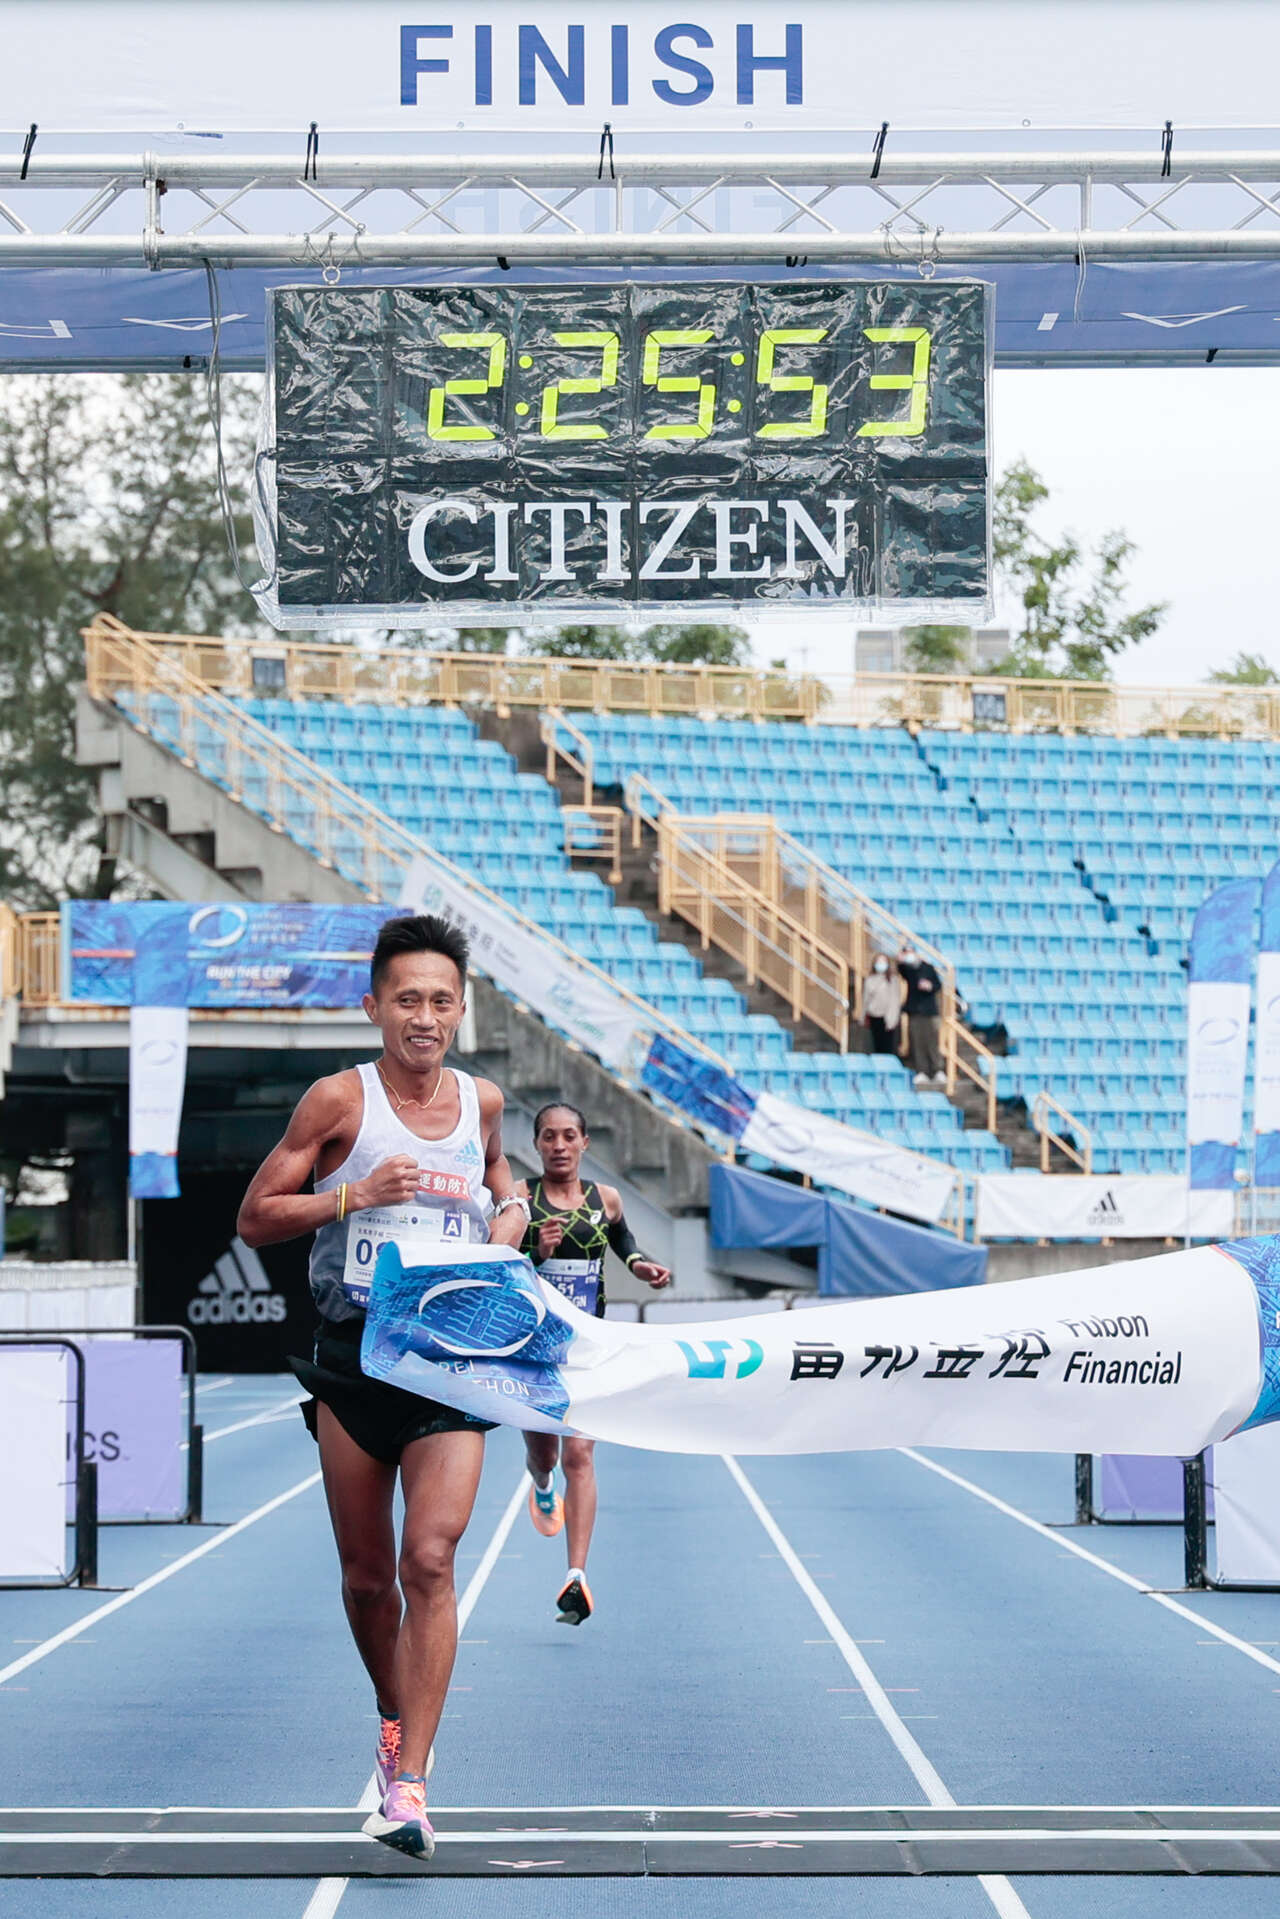 馬拉松組國內男子冠軍蔣介文 2小時25分53秒。中華民國路跑協會提供